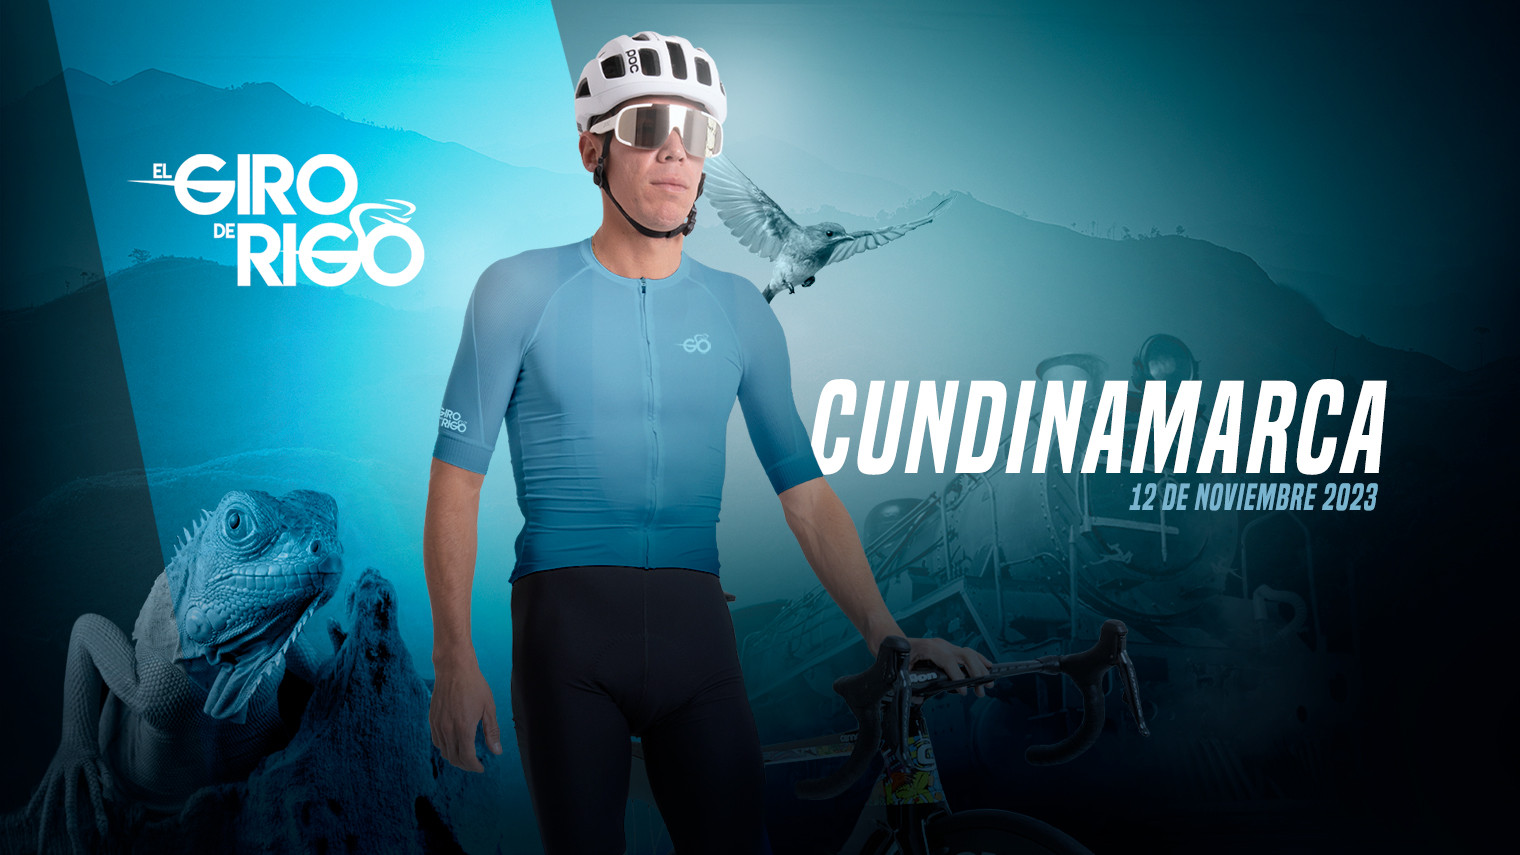 Giro de Rigo 2023: ¡Wout van Aert en Cundinamarca la carrera que paralizará el departamento!